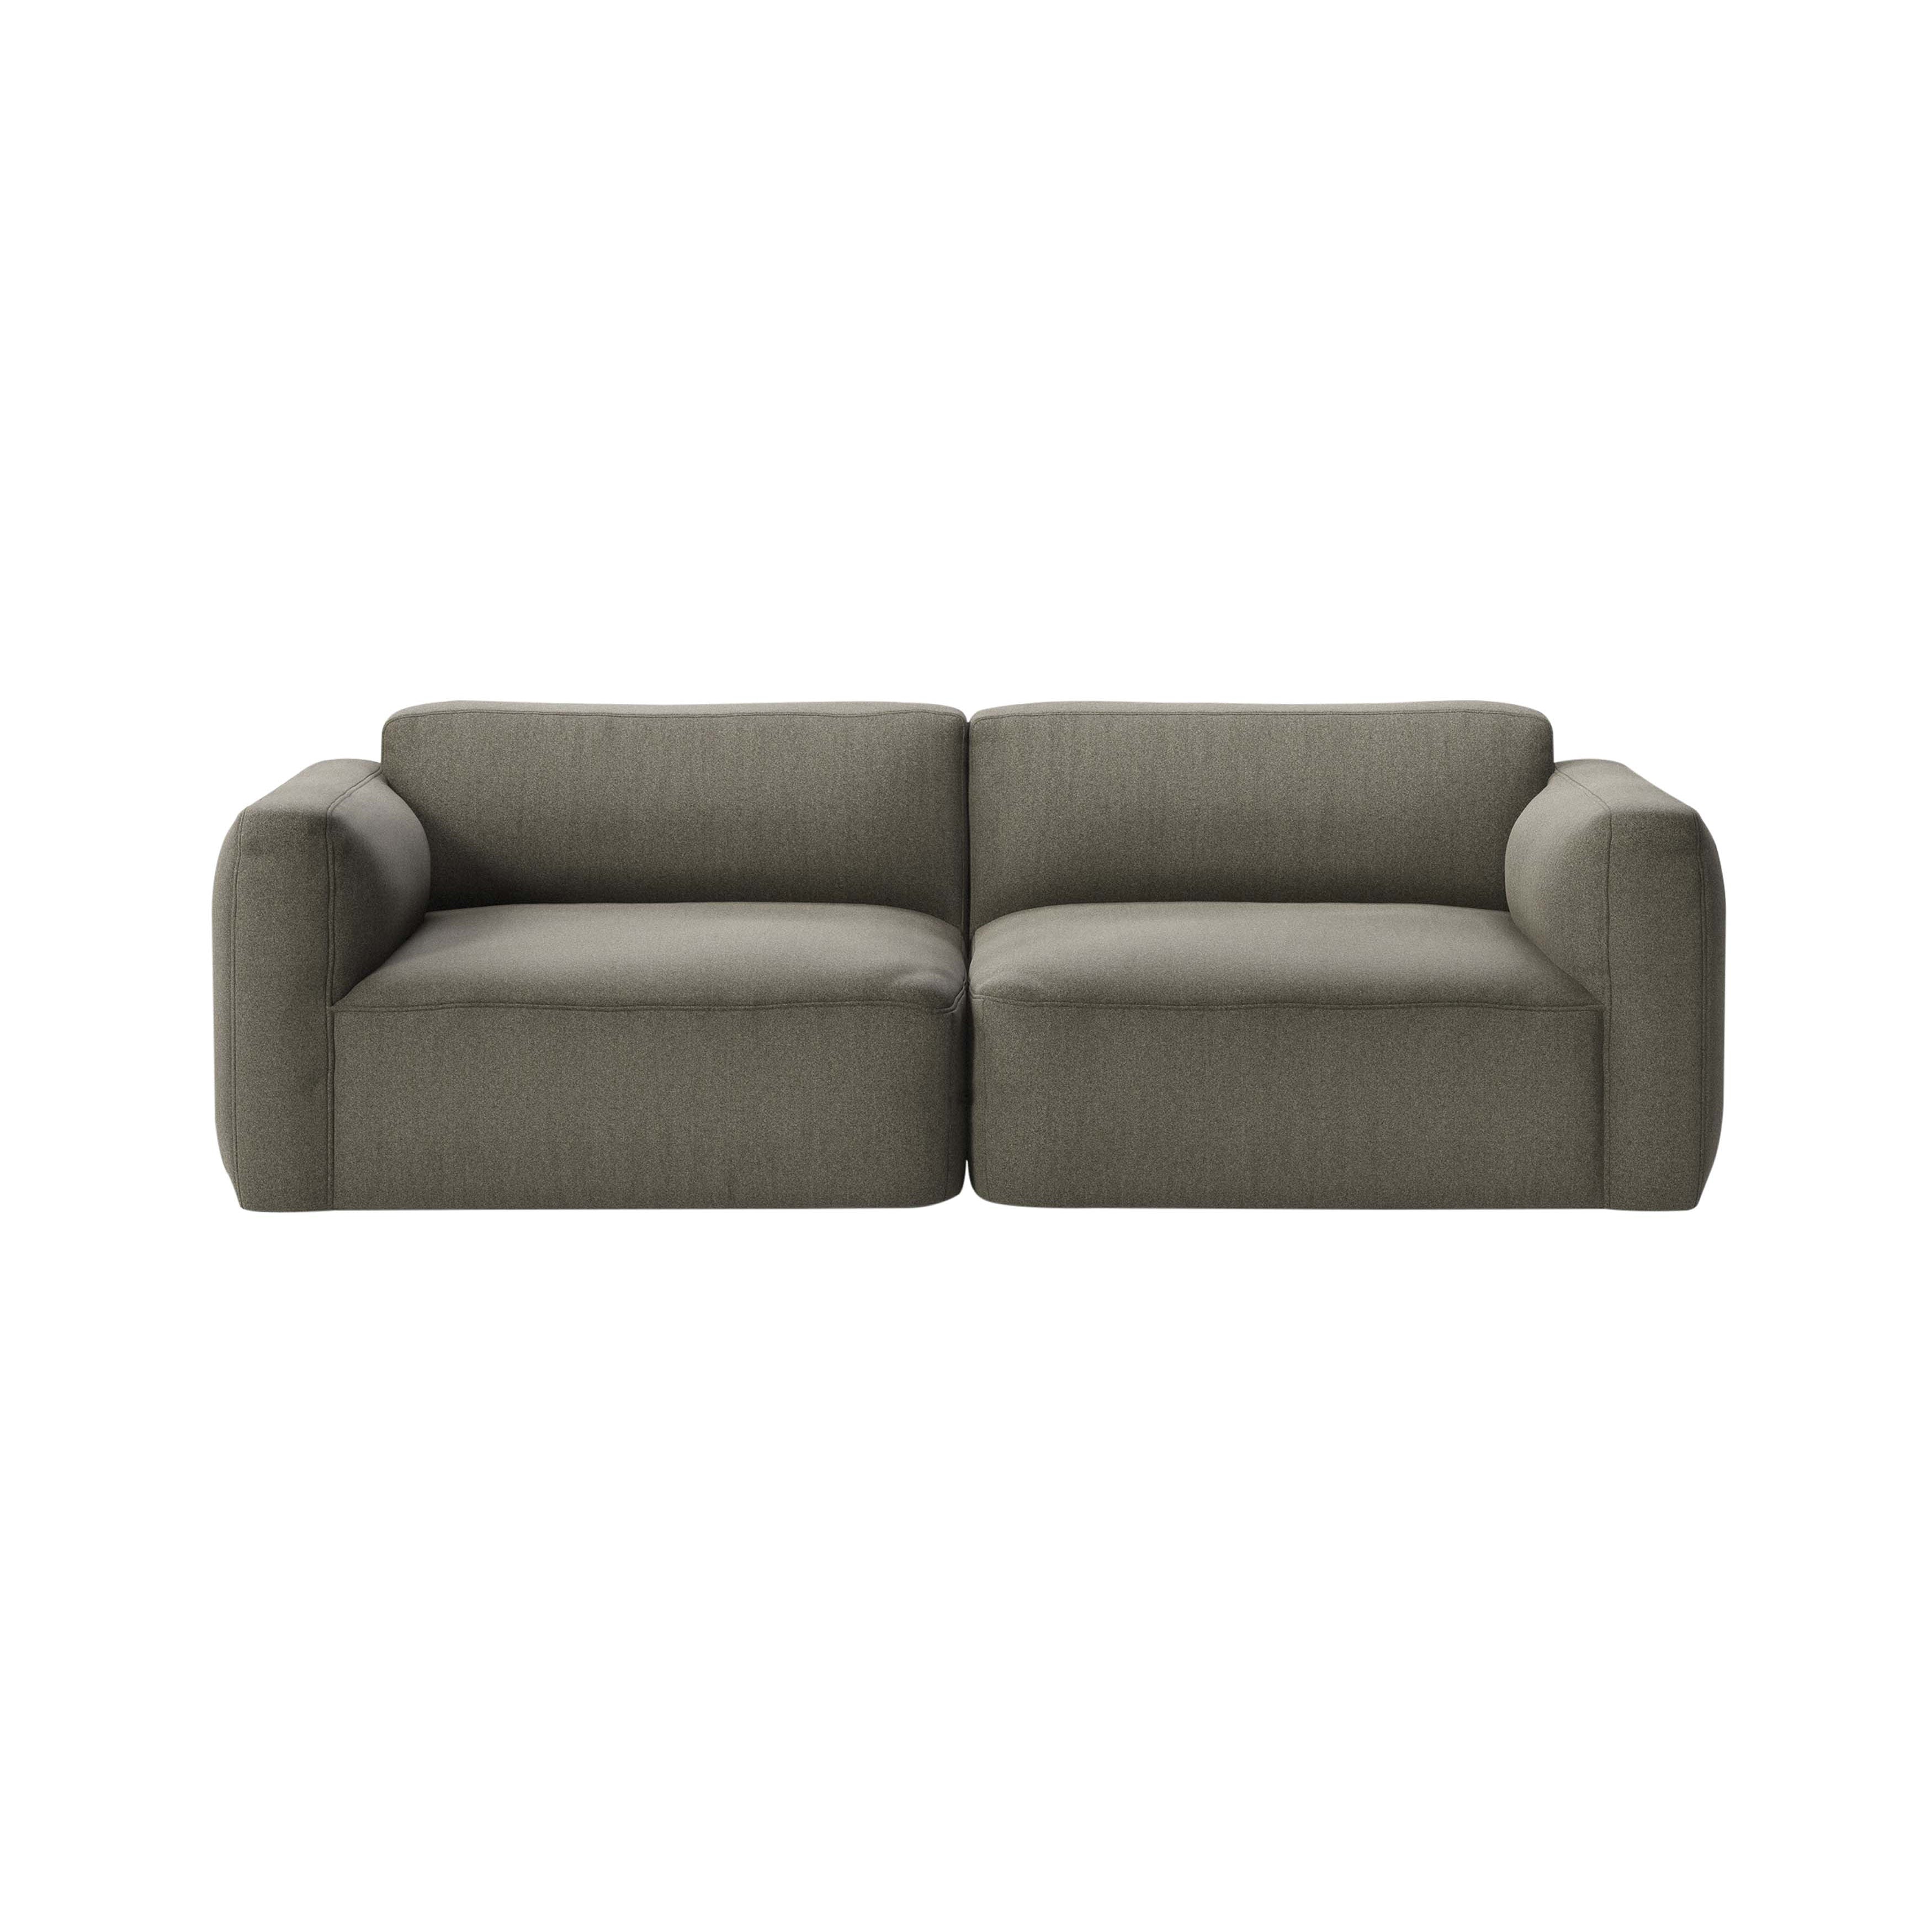 Develius Mellow Sofa EV8: Configuration A